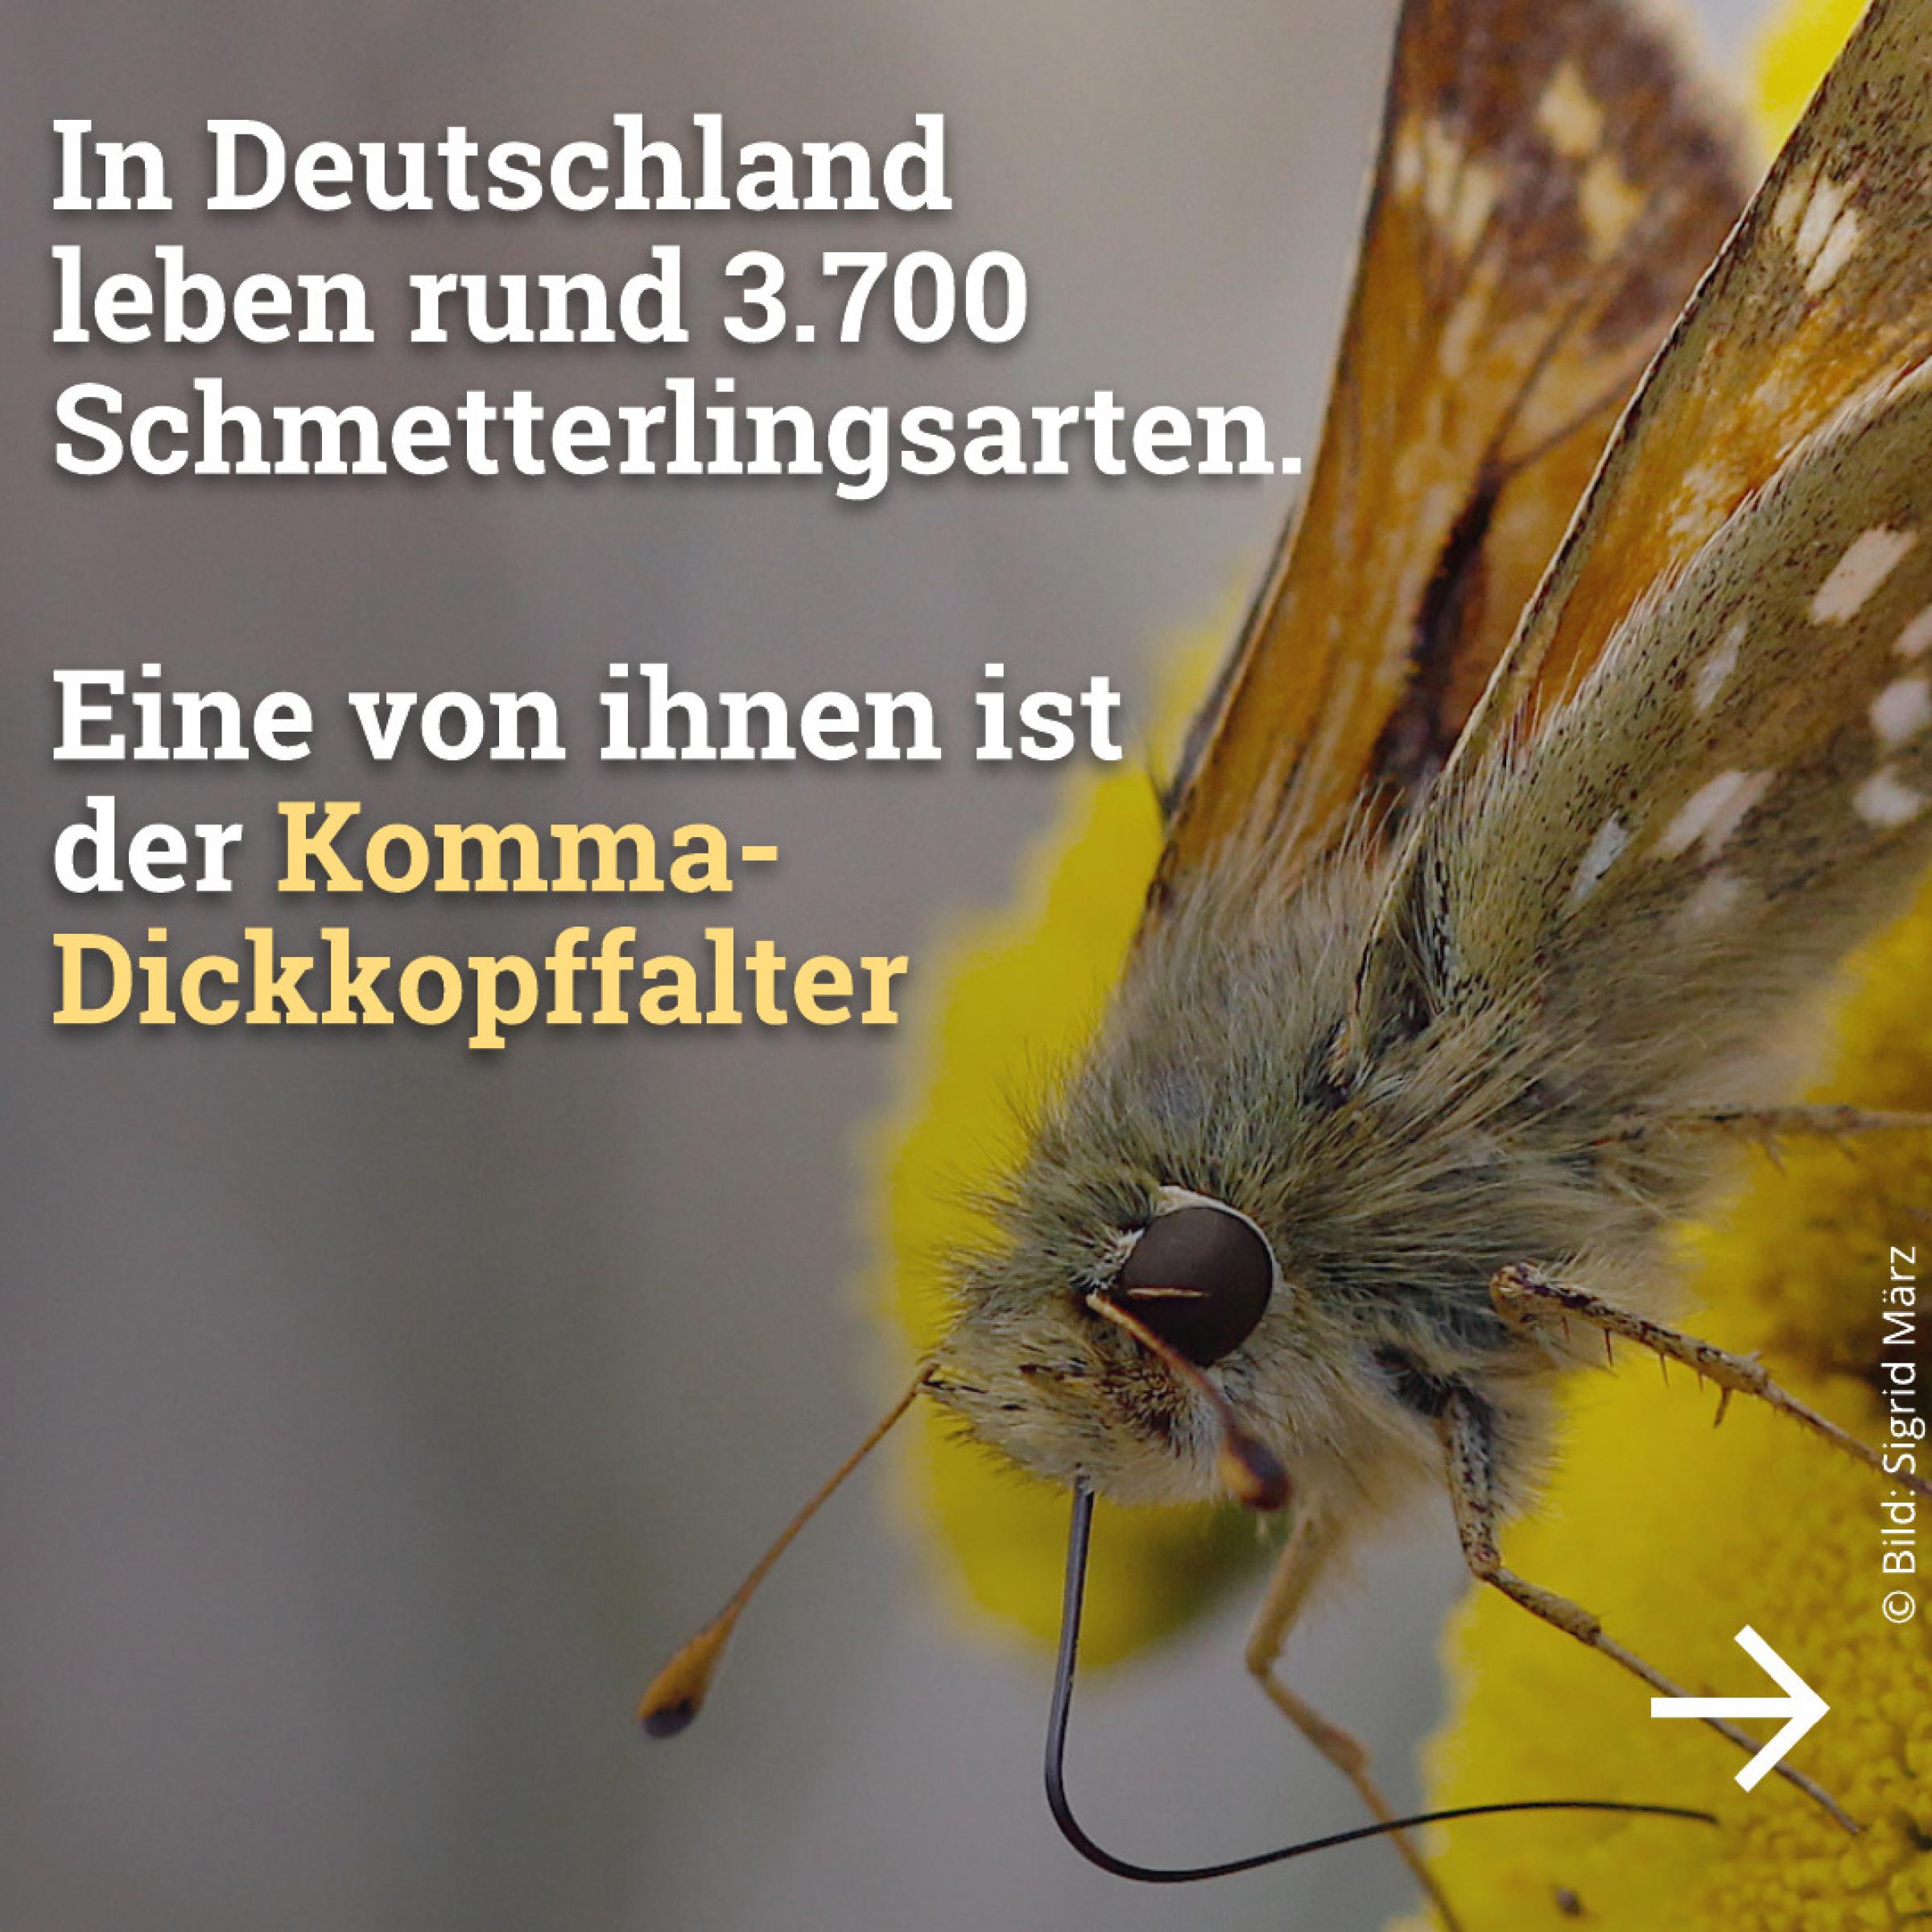 In Deutschland leben rund 3.700 Schmetterlingsarten. Eine von ihnen ist der Komma-Dickkopffalter